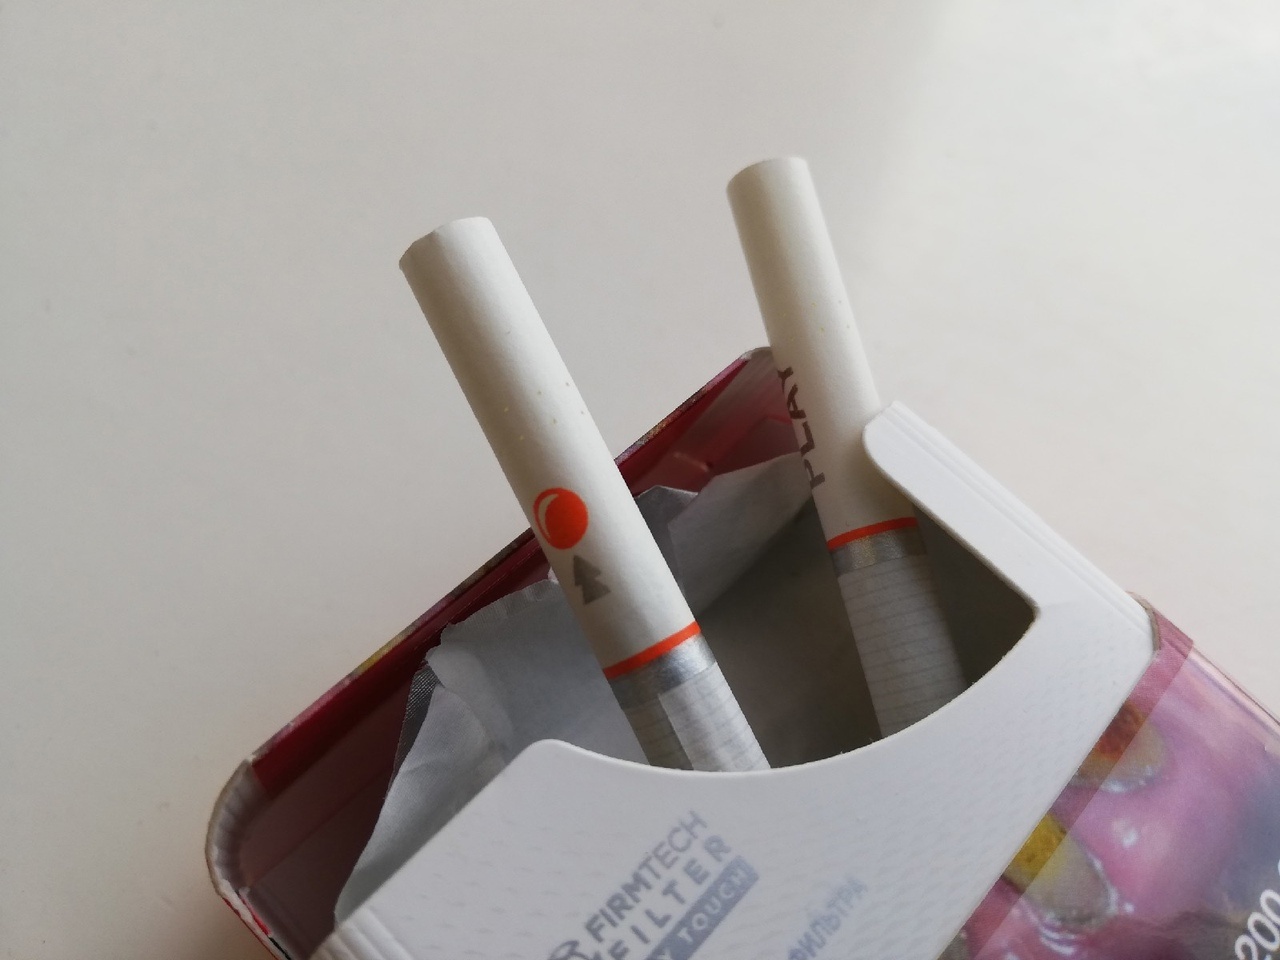 Жители Алексина пресекли незаконную онлайн-продажу табака для кальяна